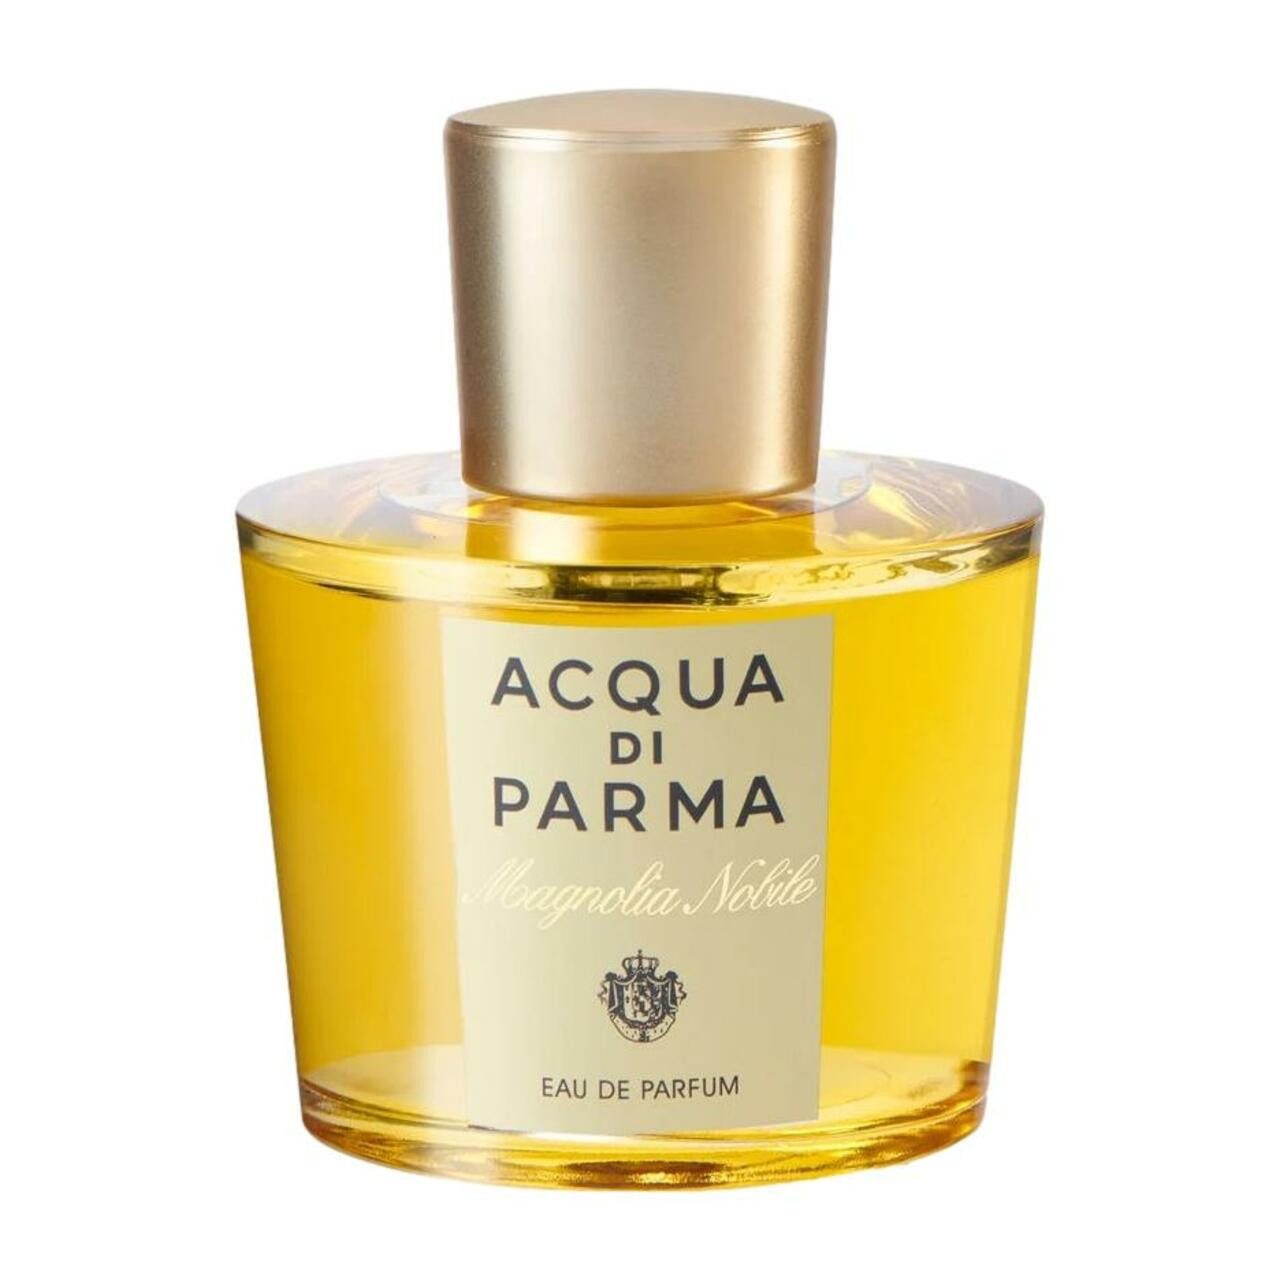 Acqua di Parma Eau de Parfum Magnolia Nobile E.d.P. Spray